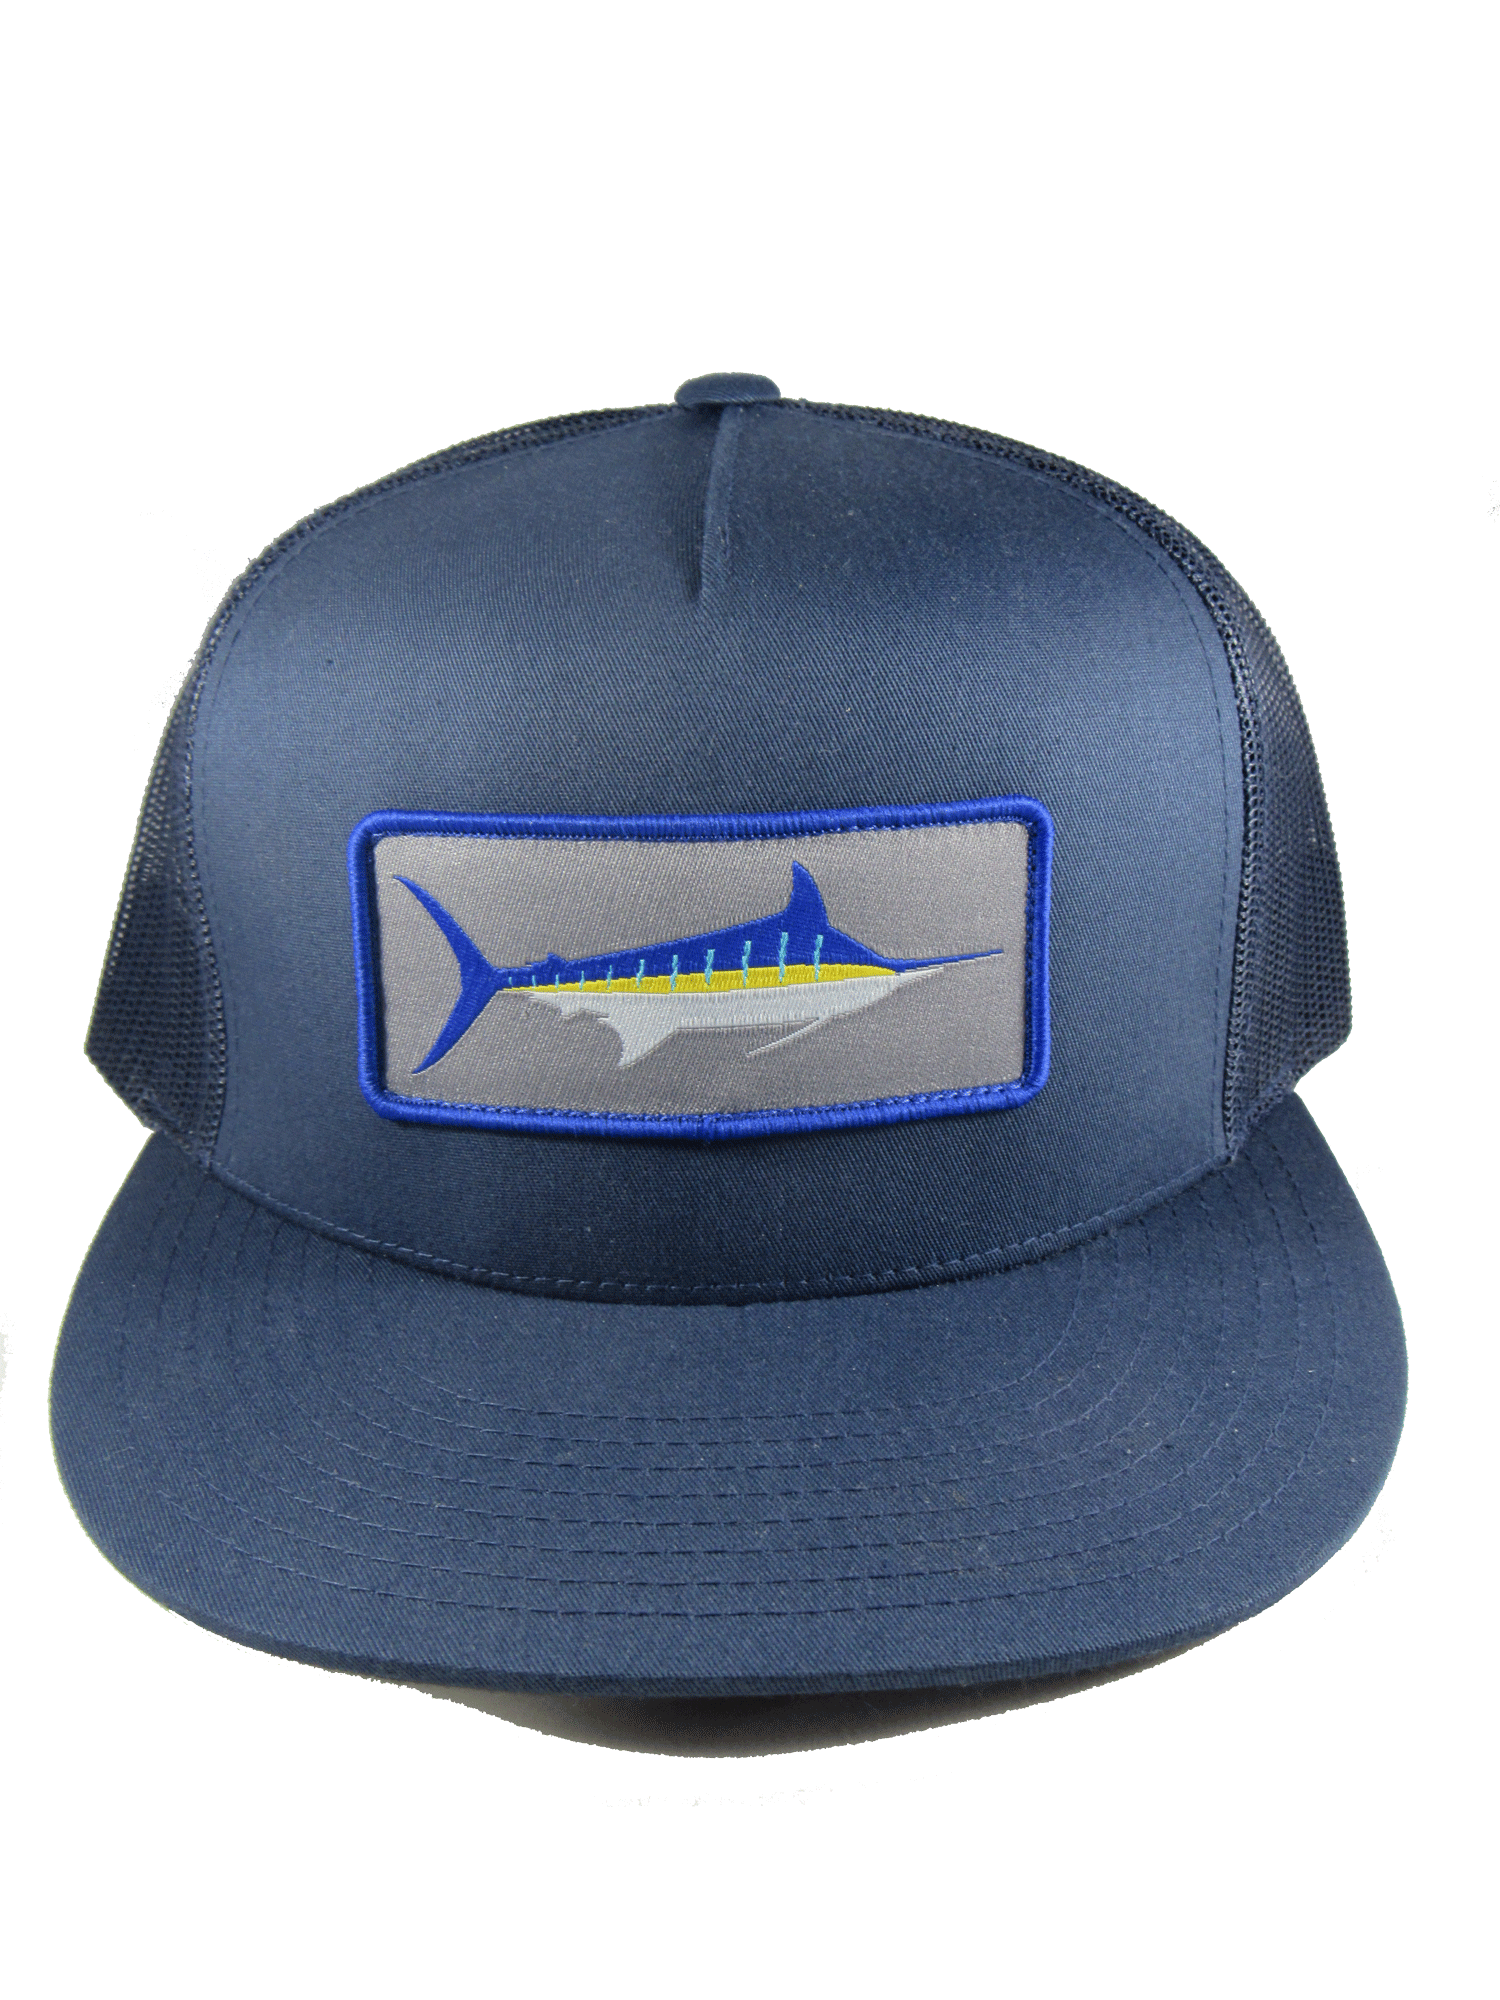 Marlin Stripe Hat - Charcoal or Navy - 4 Trucker